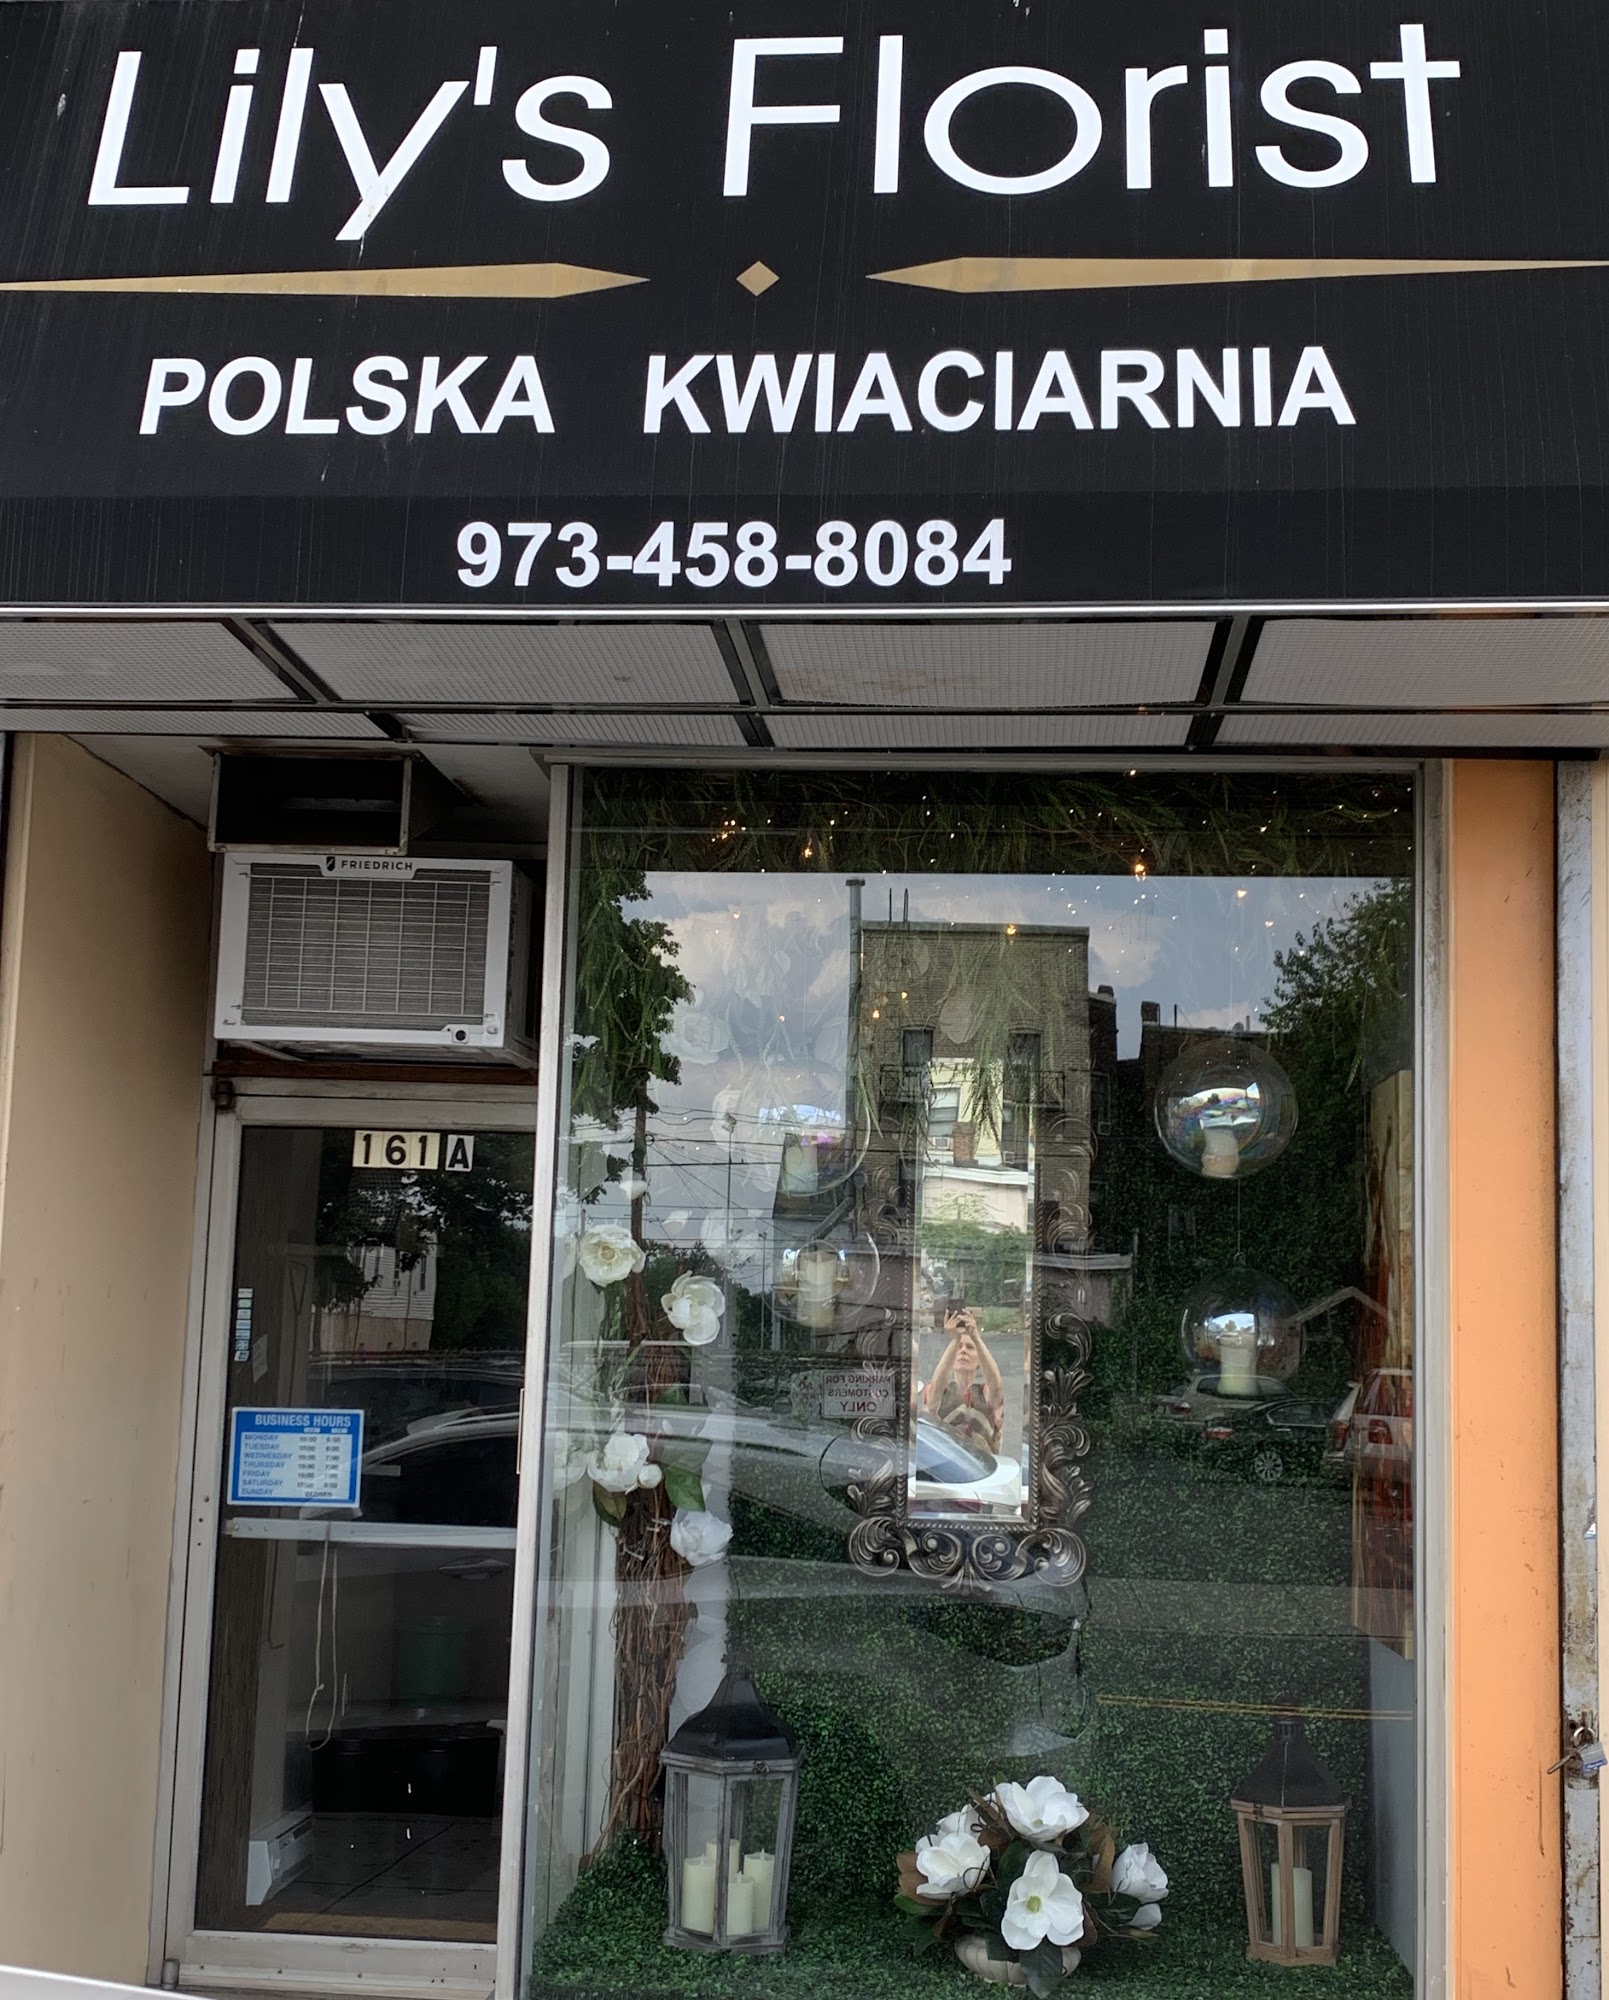 Polska Kwiaciarnia - Lily's Florist LLC